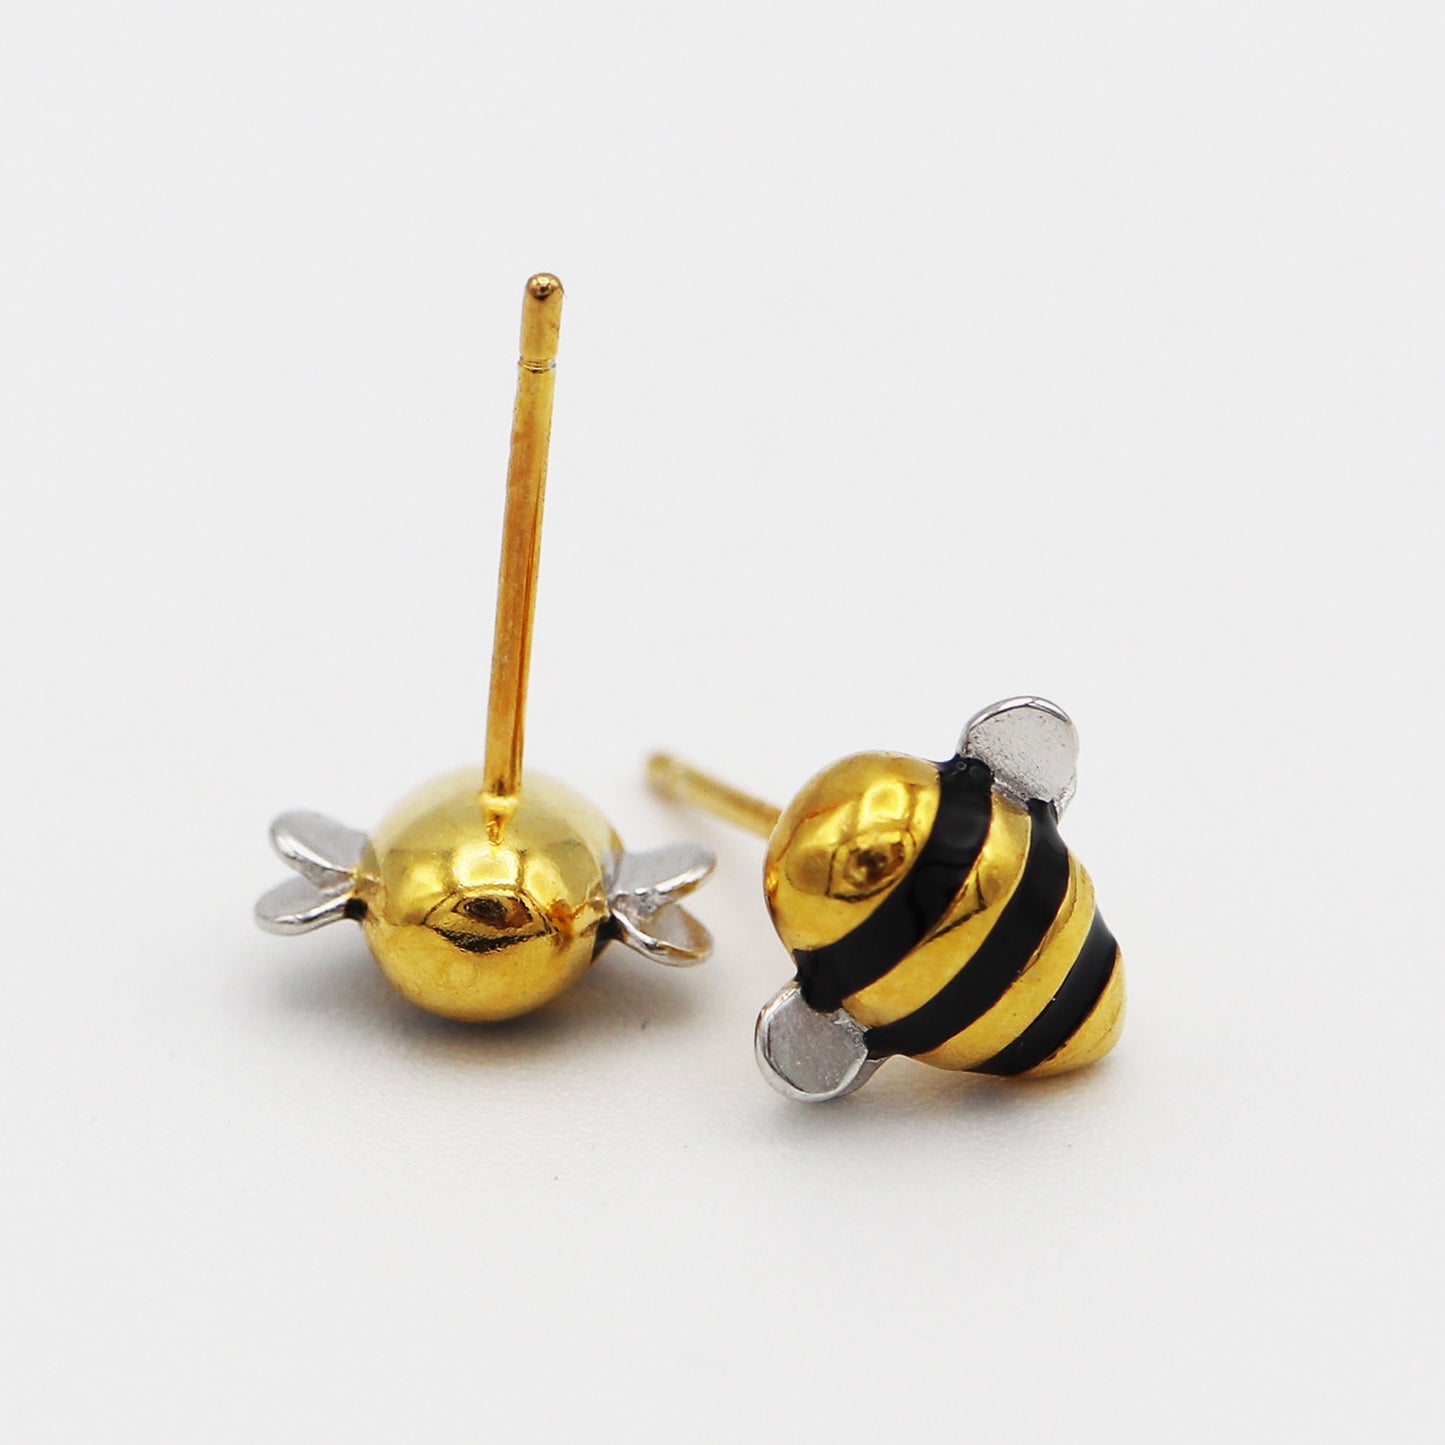 Bumblebee Earrings